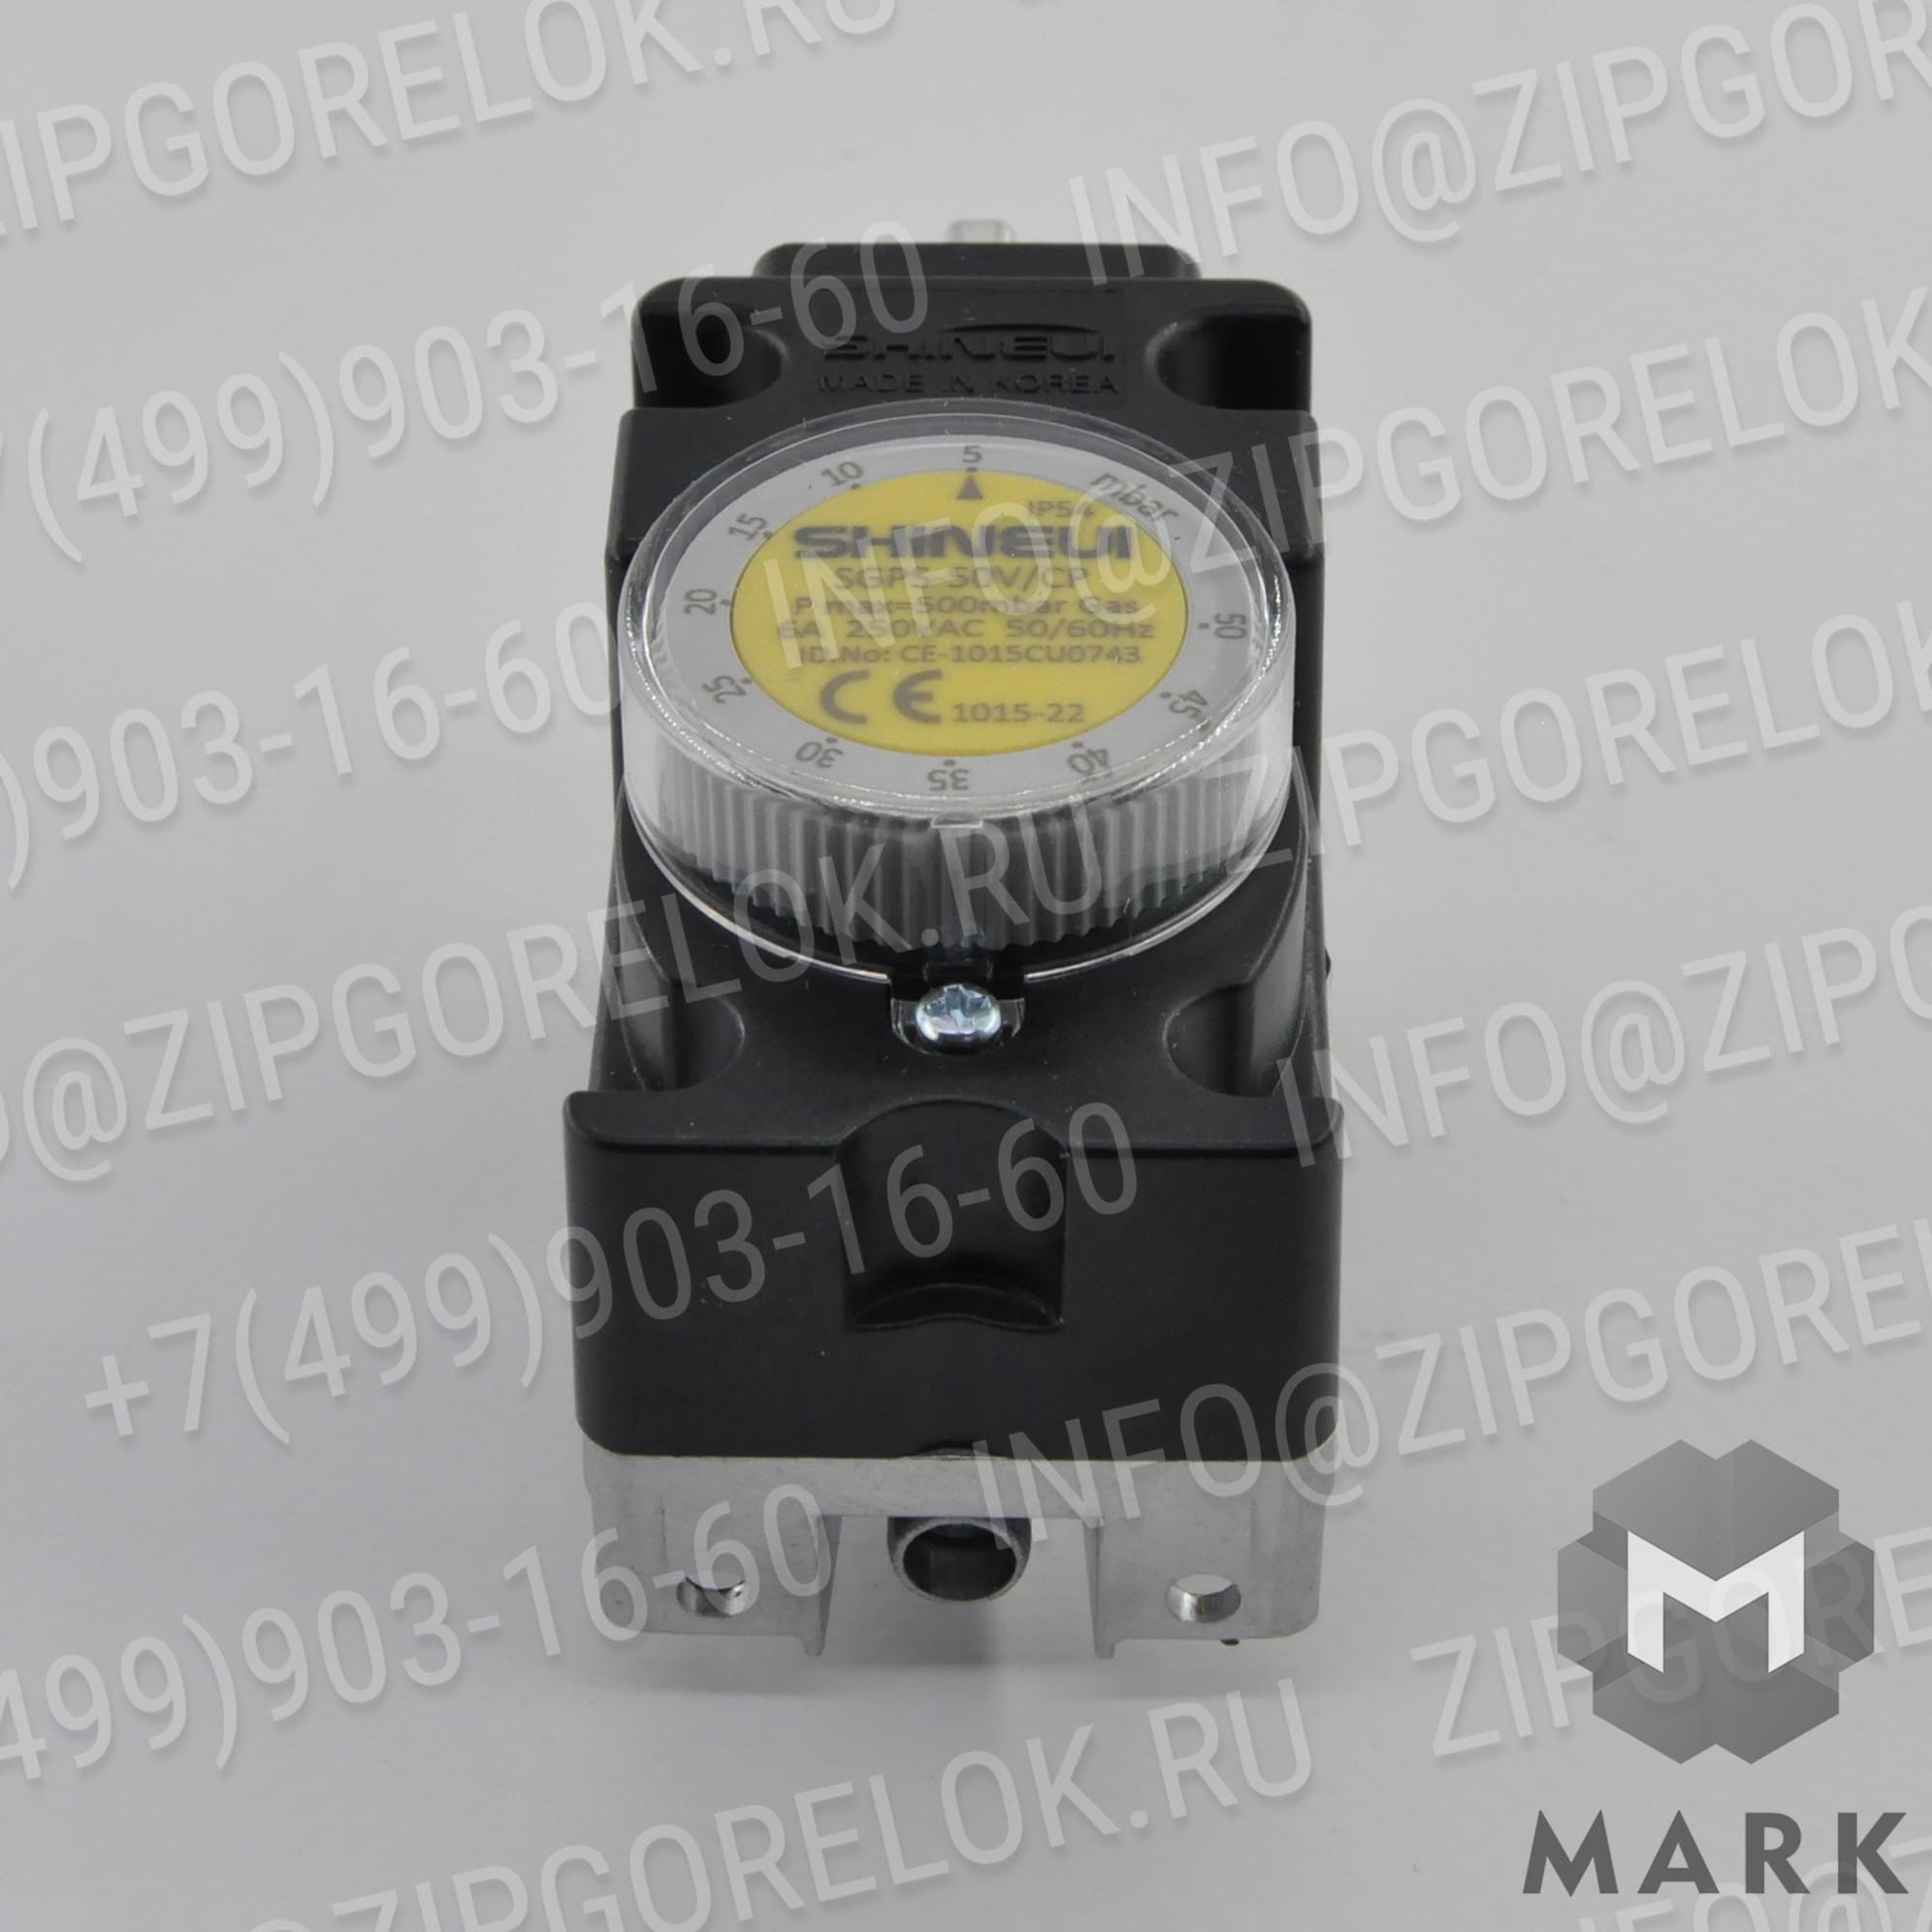 SGPS-50V-CP Купить 20052997 Трубка Riello / Риелло | Zipgorelok.ru